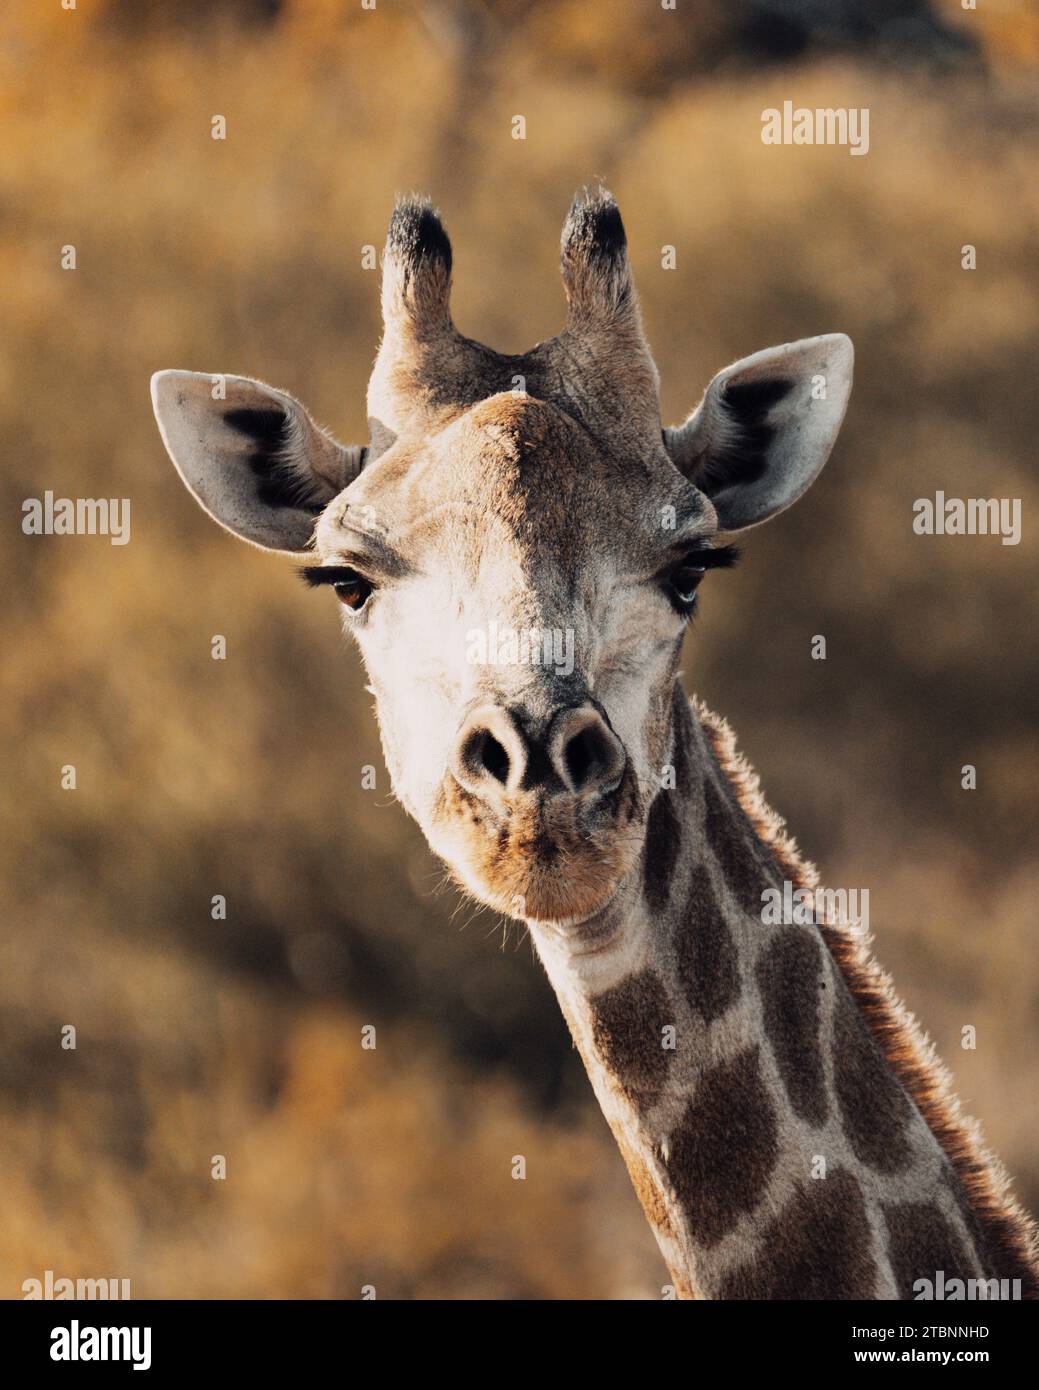 Ritratto ravvicinato del volto di una giraffa, catturato con dettagli squisiti mentre guarda direttamente nella fotocamera. Foto Stock